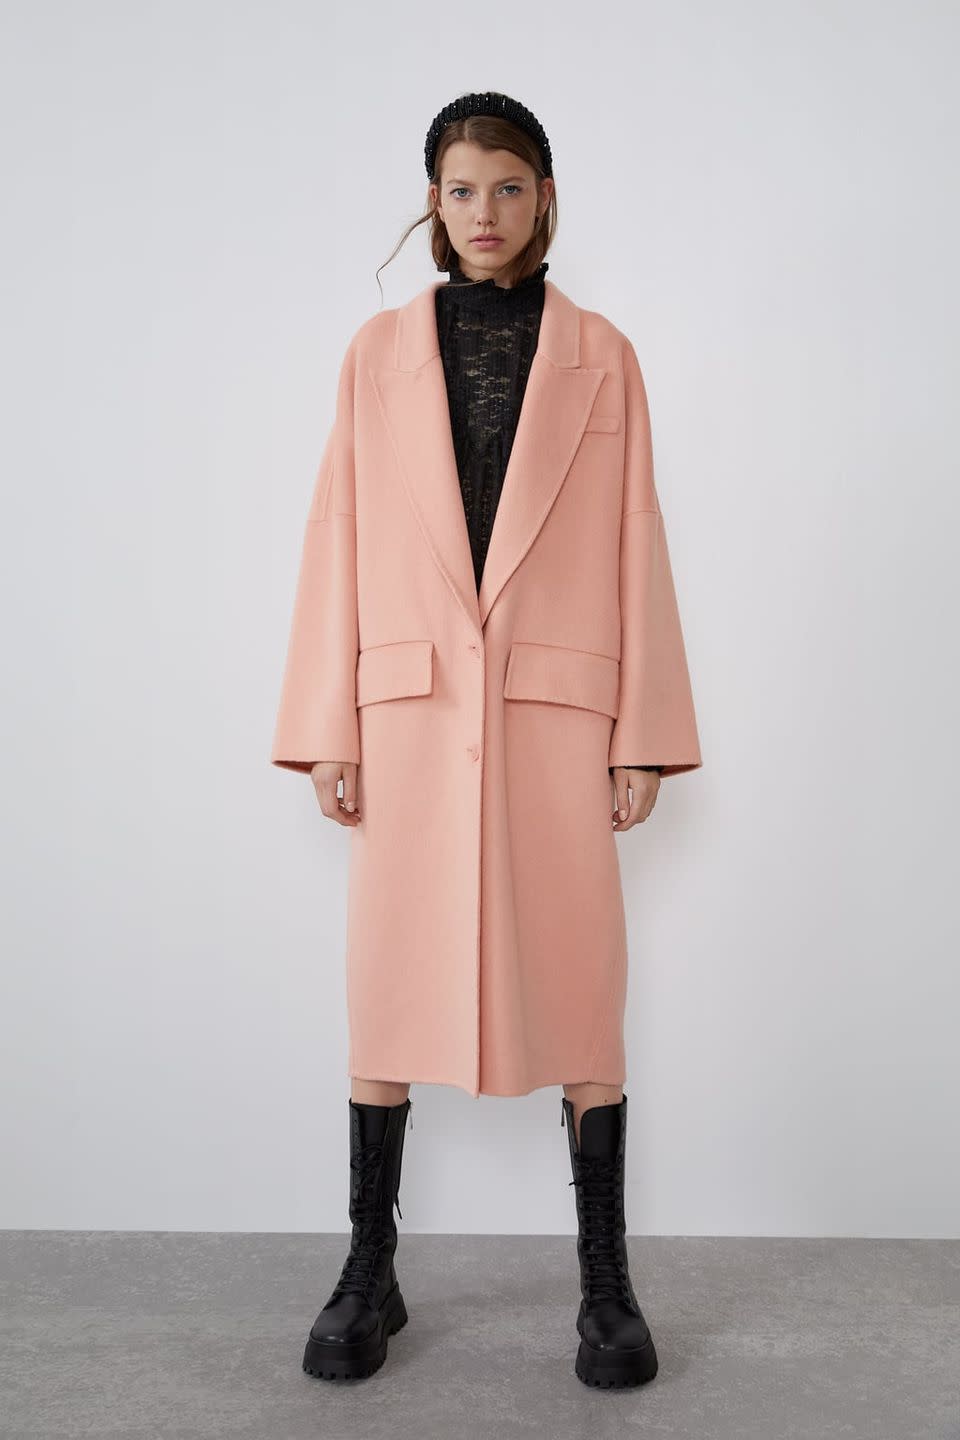 Best Zara coats